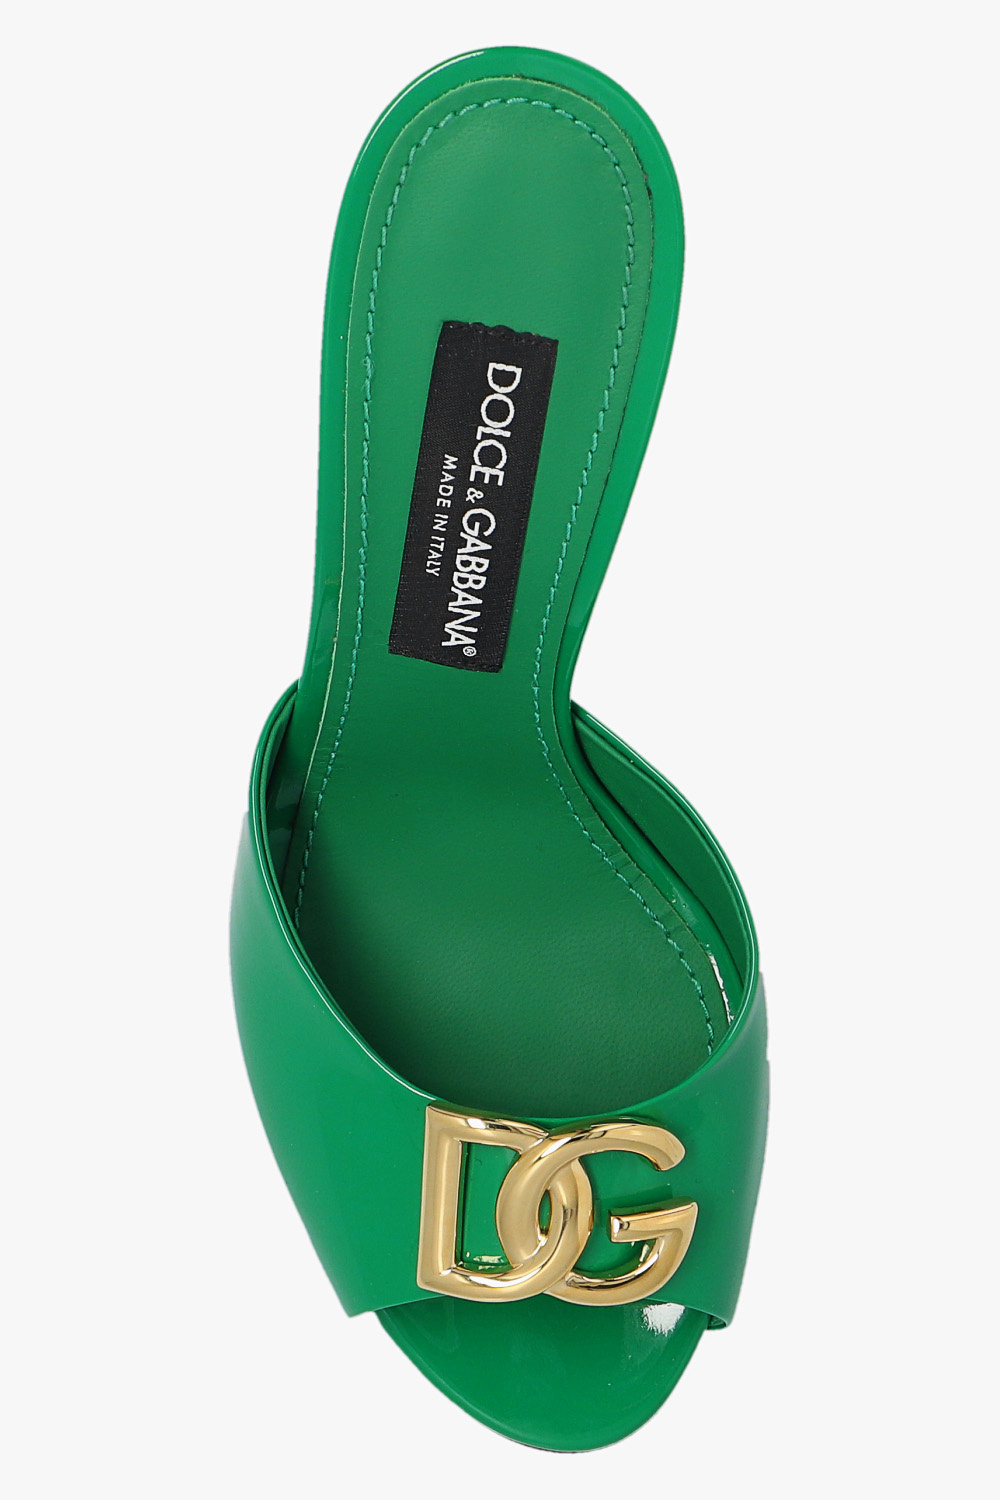 Dolce & Gabbana Glossy heeled mules